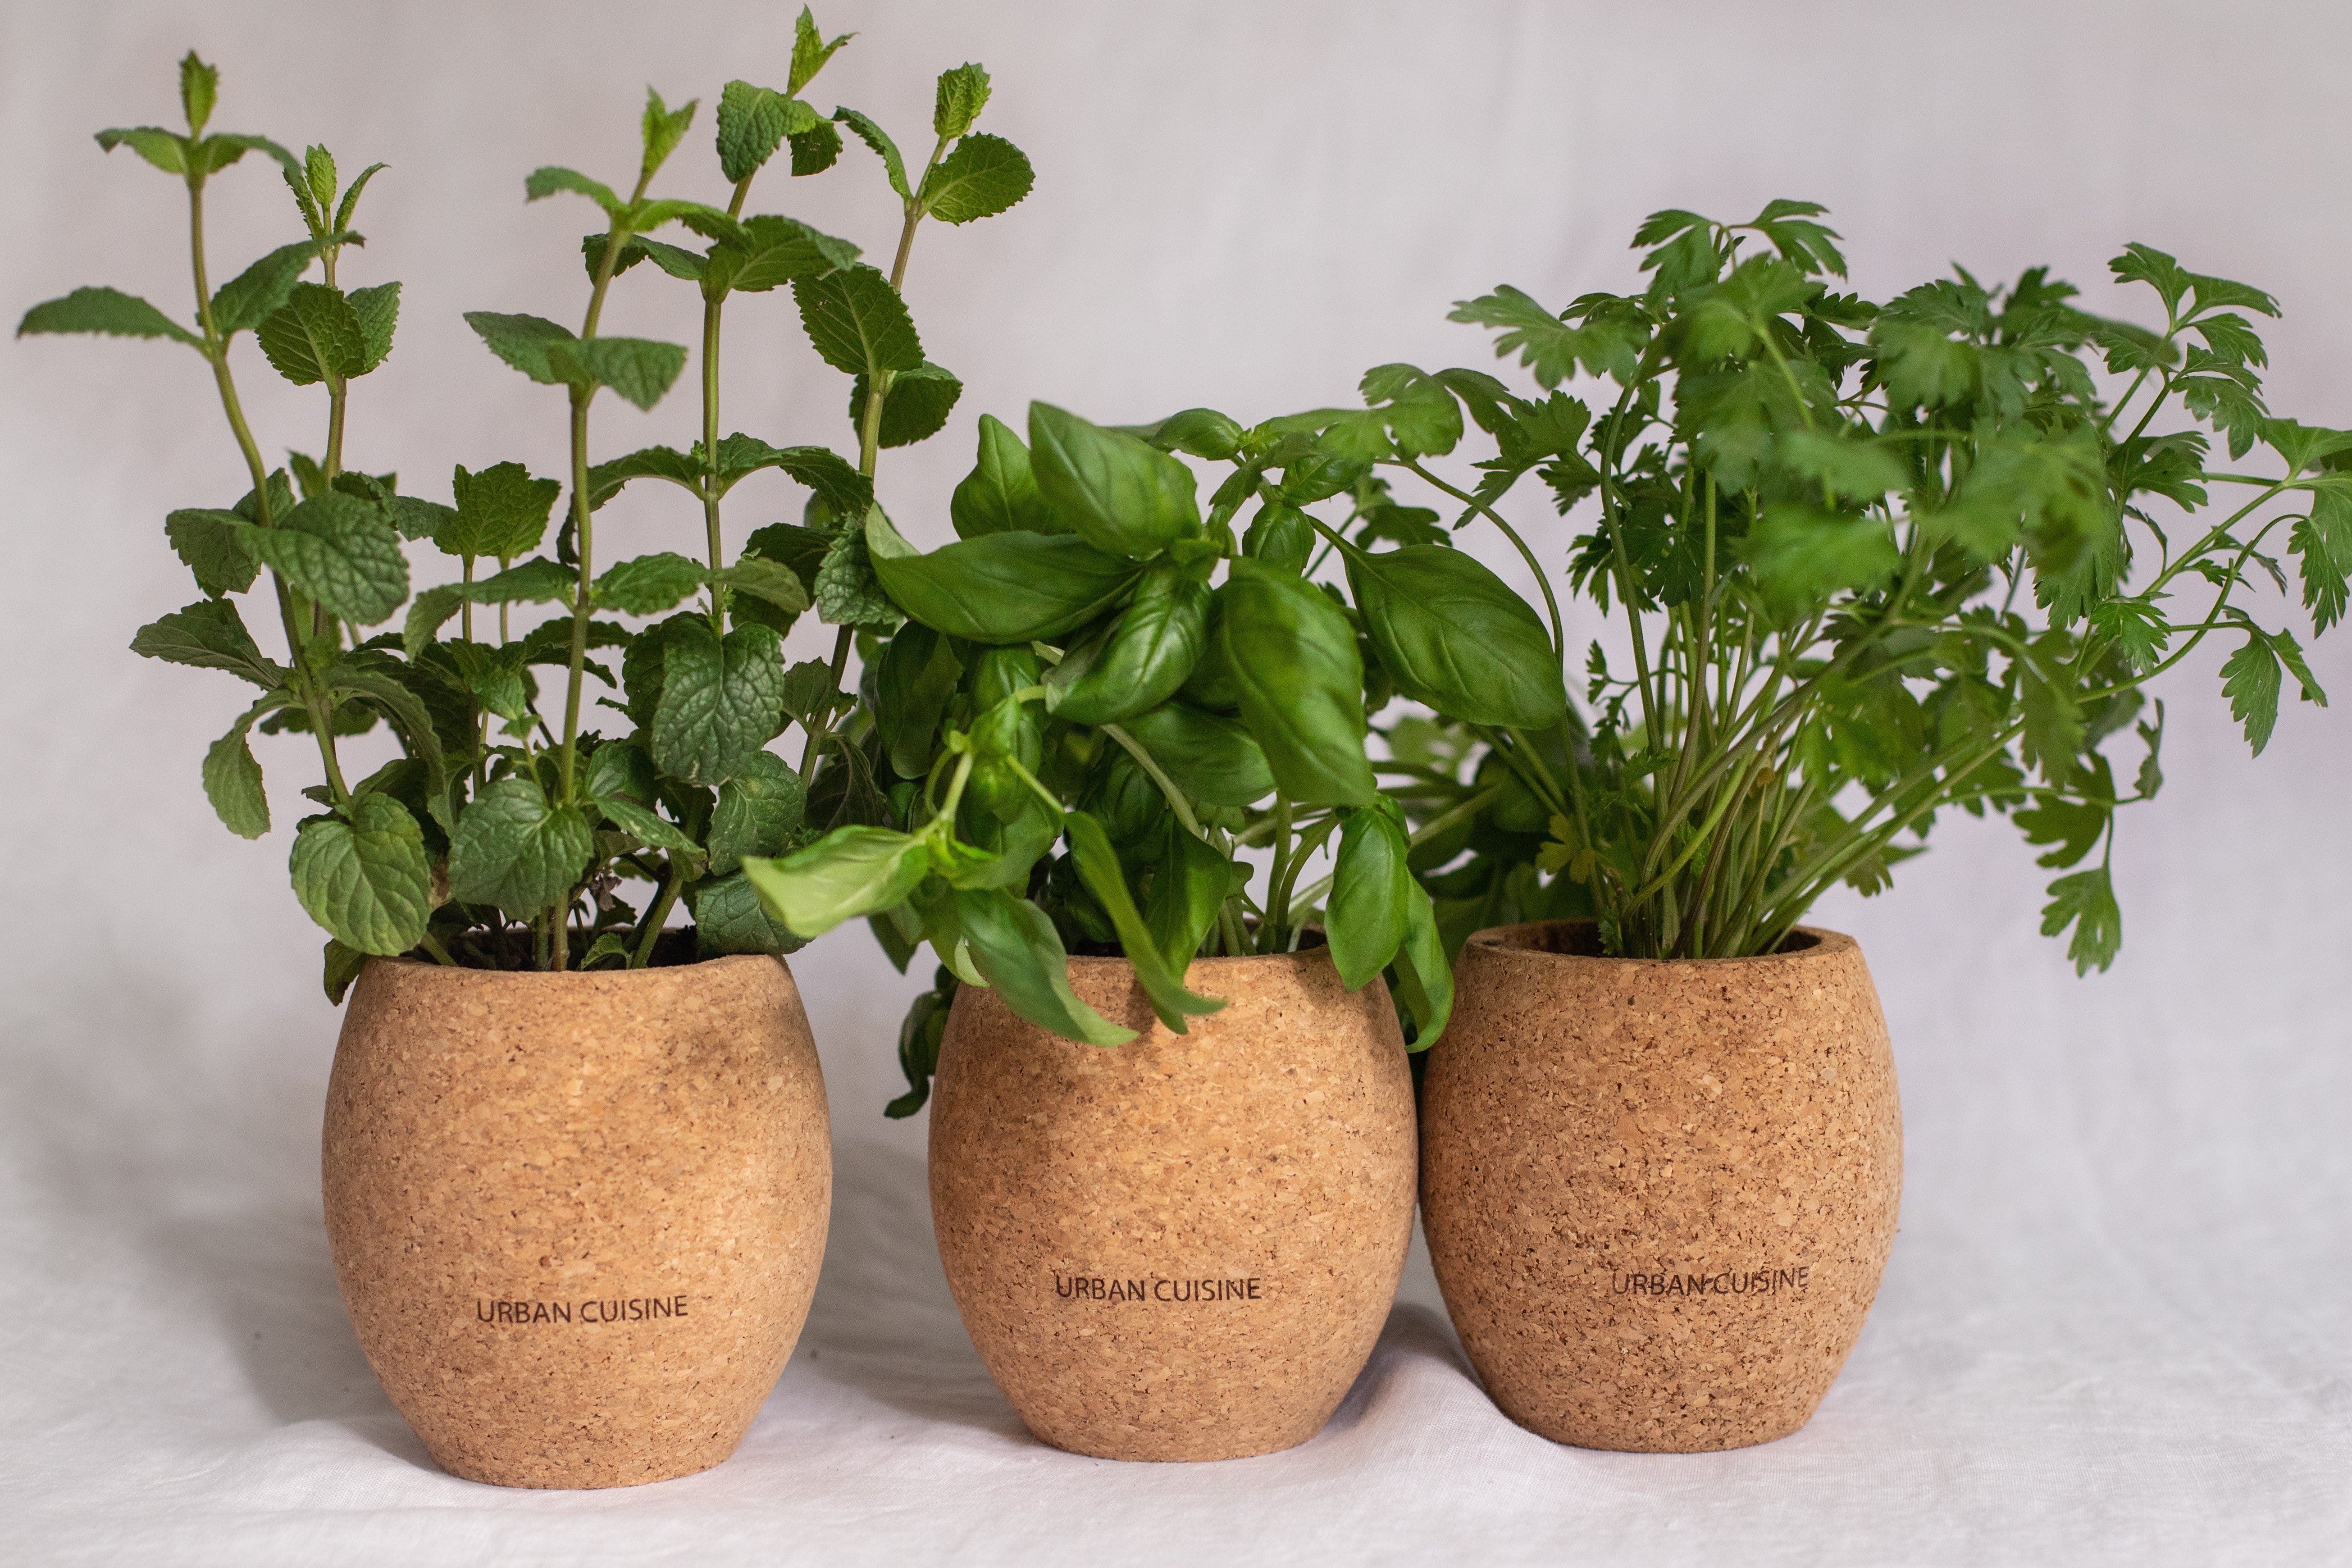 Comment faire pousser des plantes aromatiques en intérieur ? – URBAN CUISINE